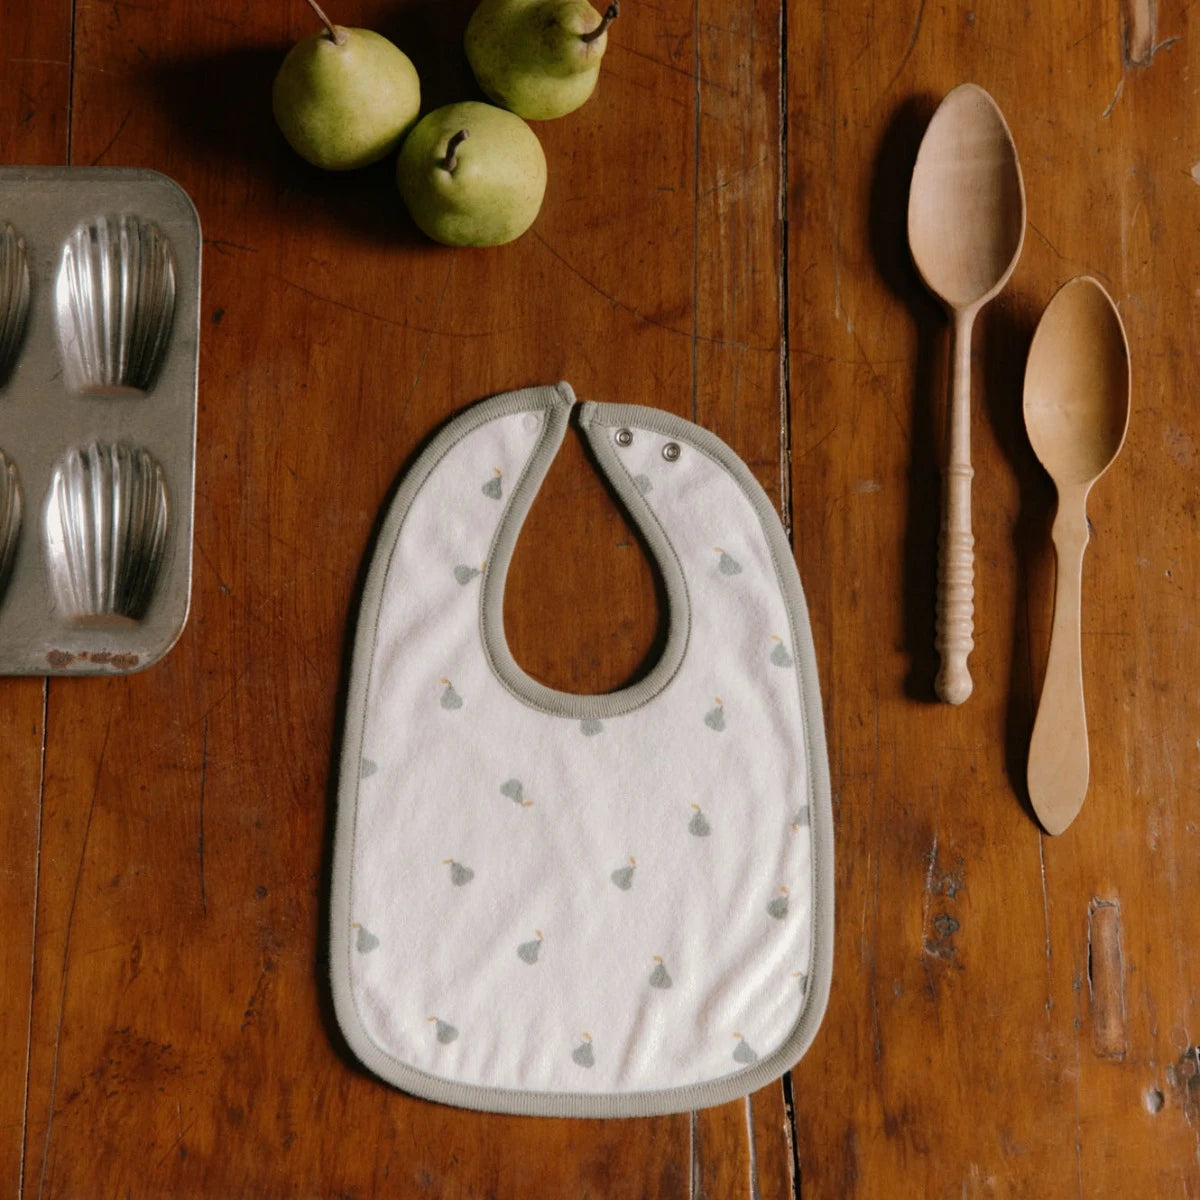 Nature Baby Reversible Bib -  Petite Pear Print